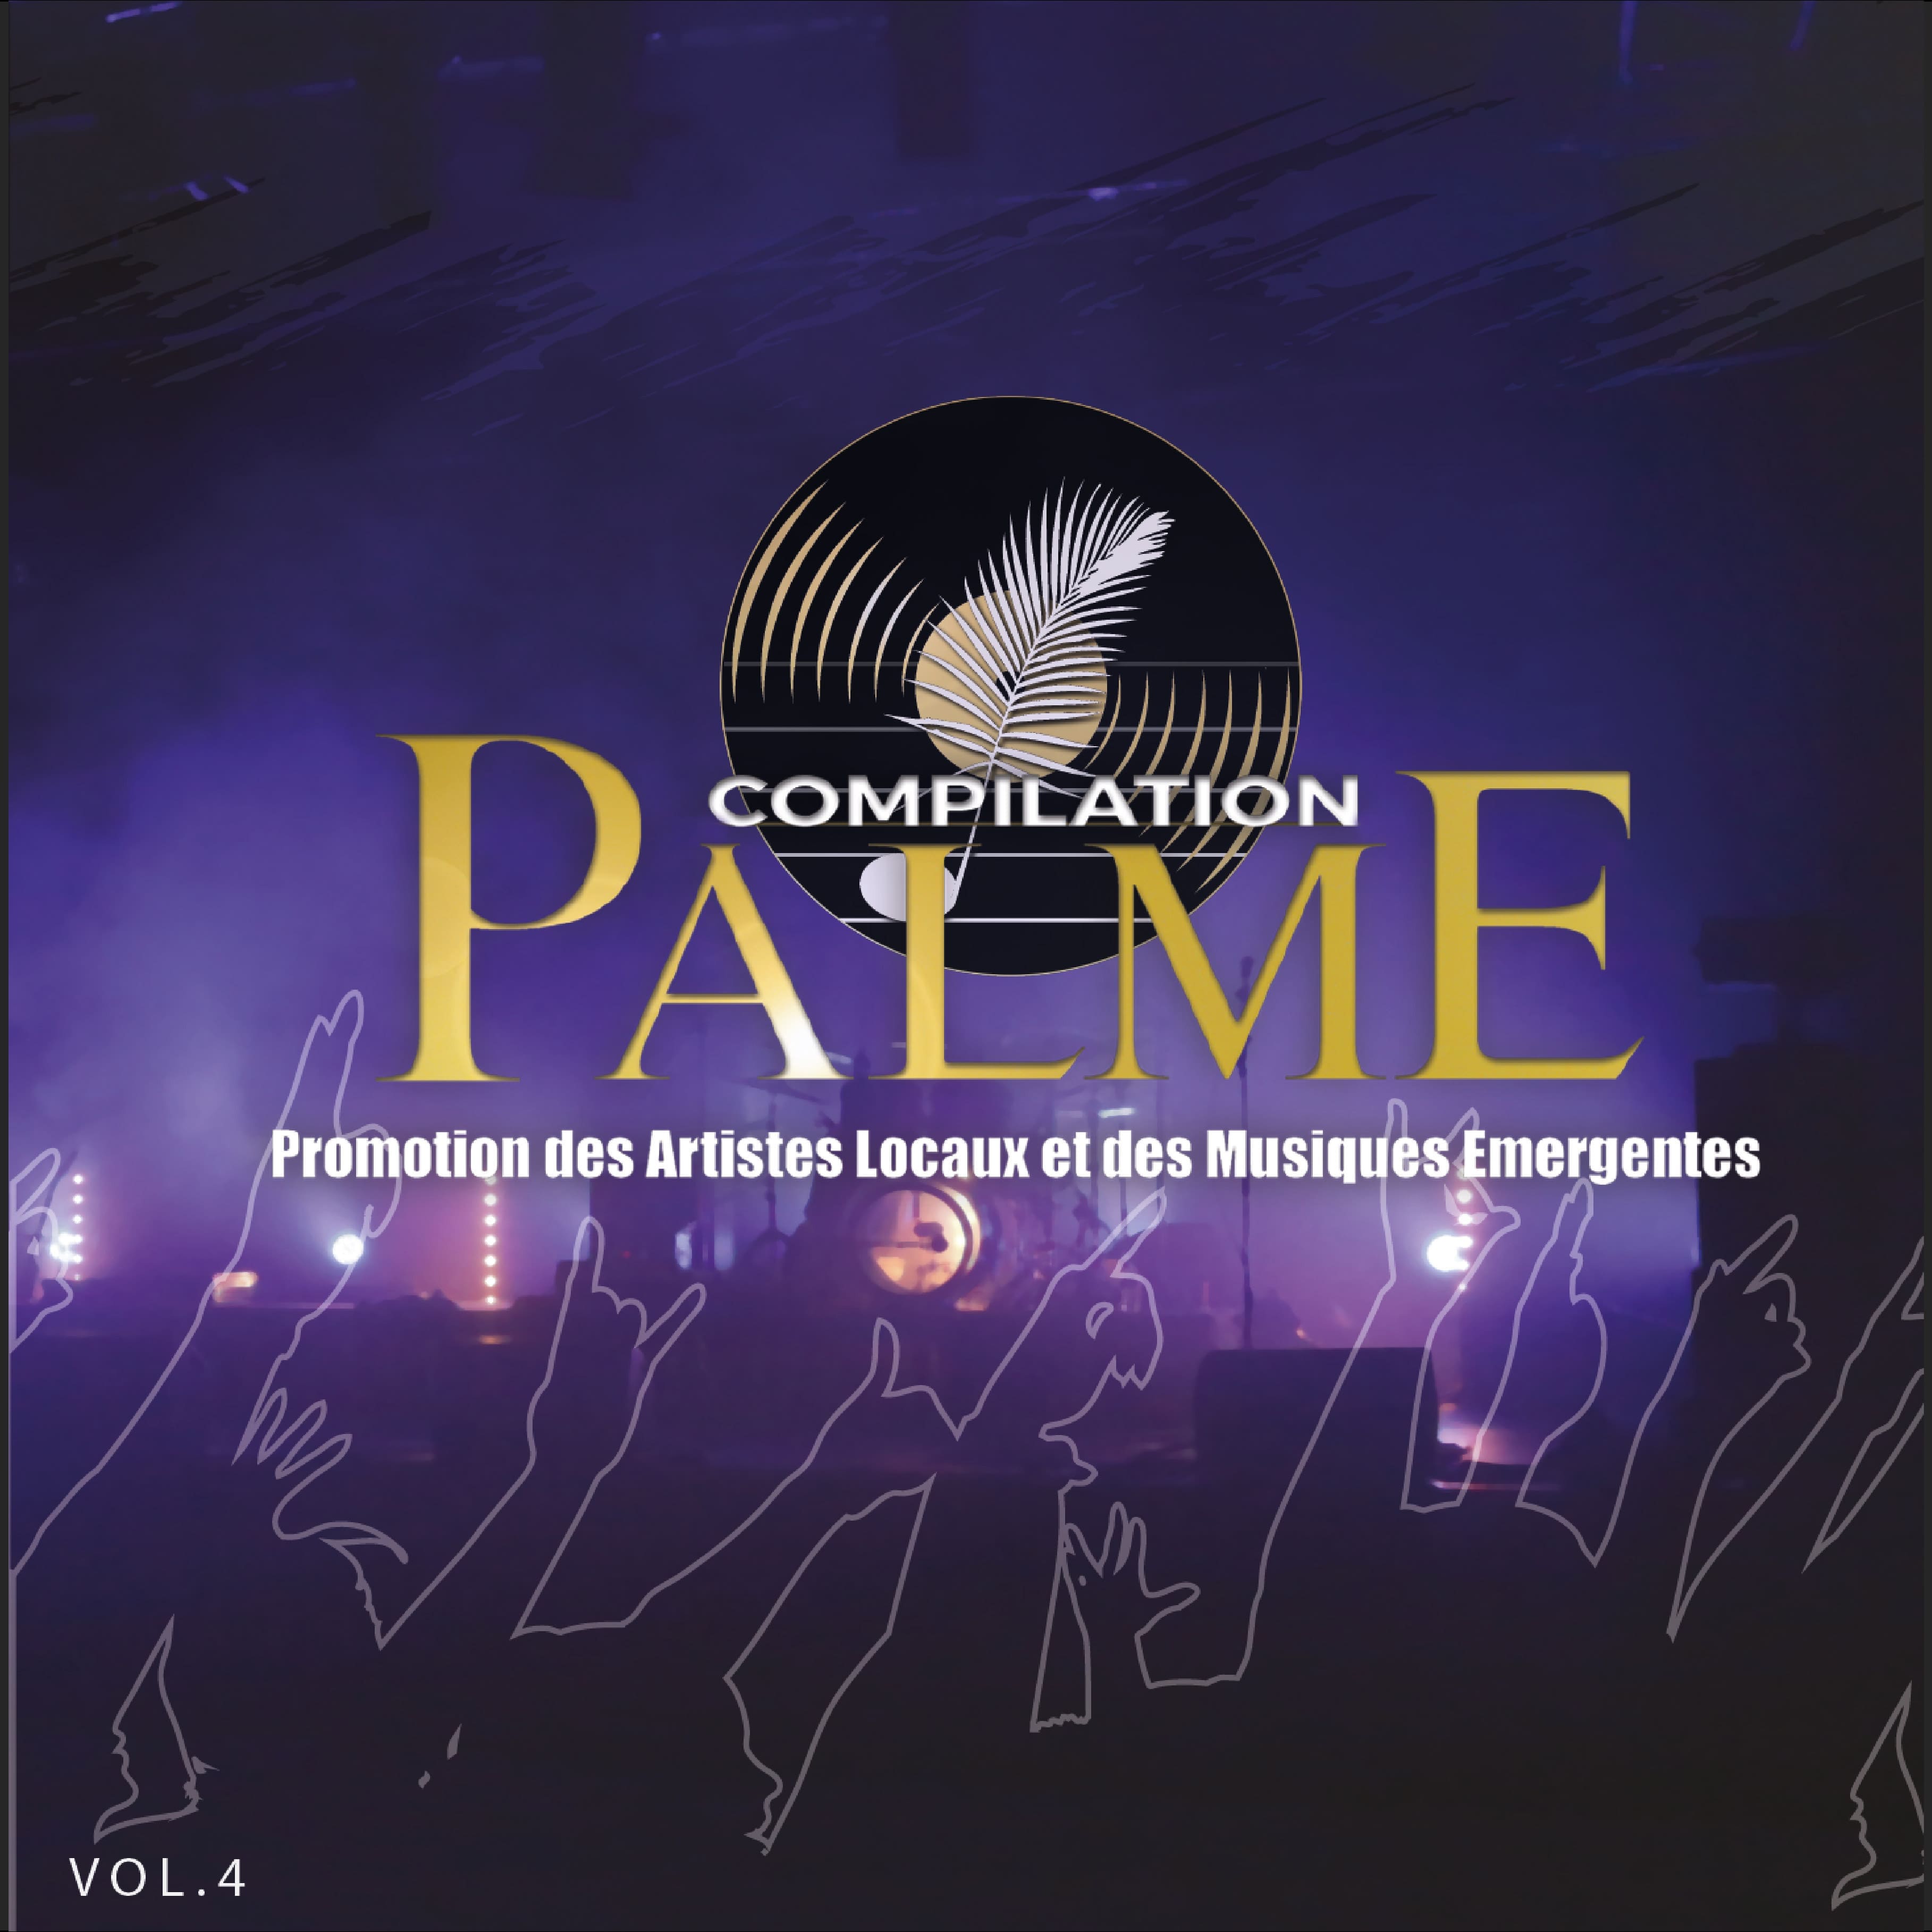 Compilation Palme Vol.4 téléchargeable en ligne